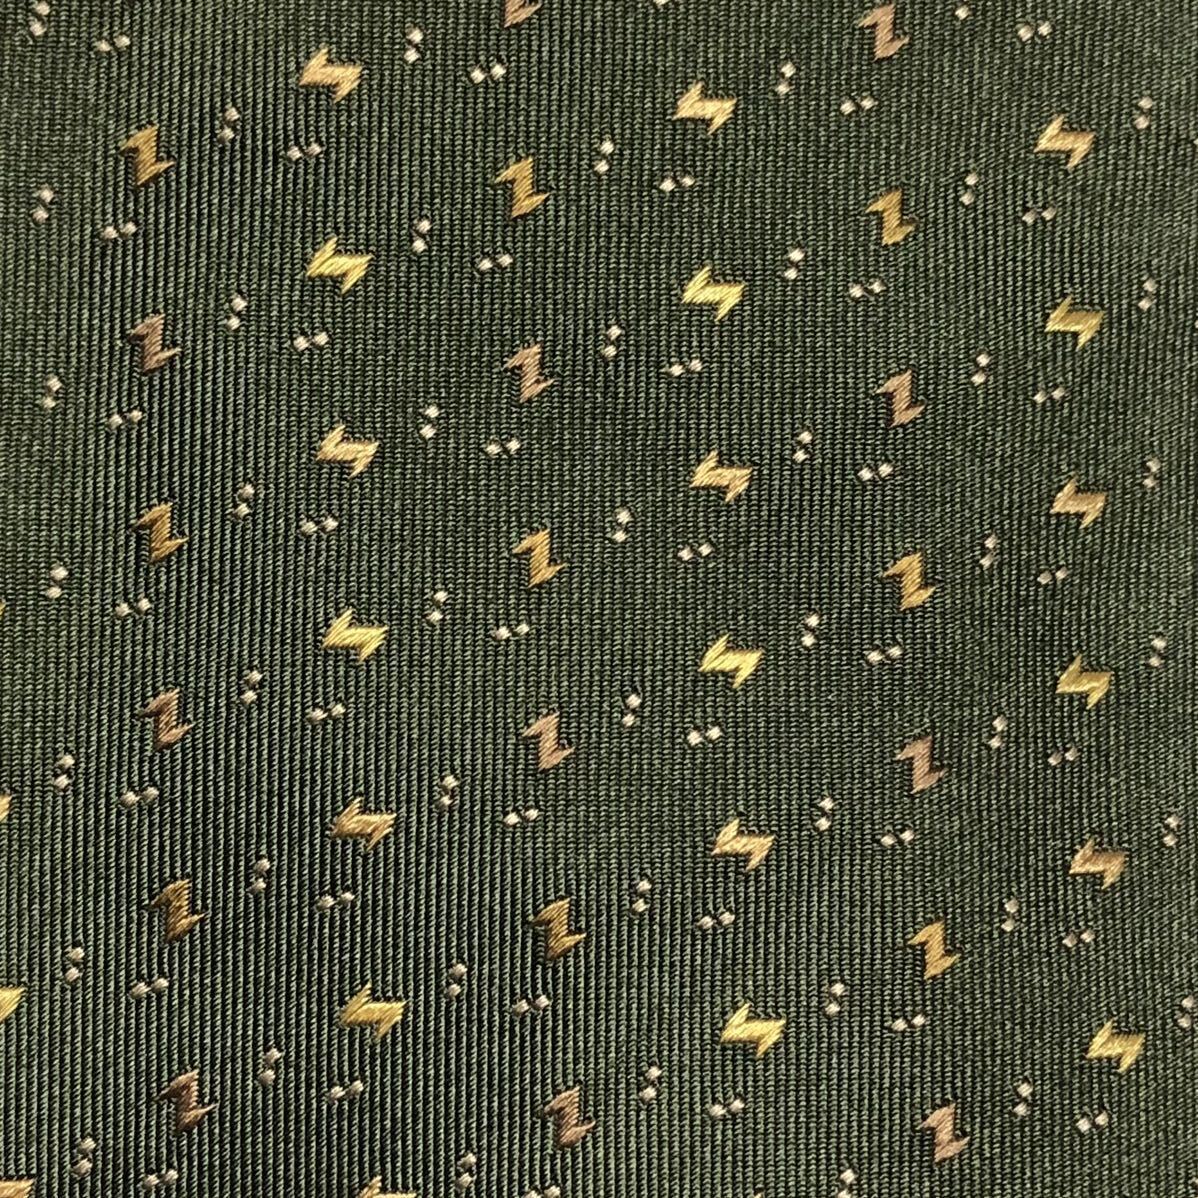 # новый товар не использовался с биркой # обычная цена 1.68 десять тысяч иен #Salvatore Ferragamo Salvatore Ferragamo галстук общий рисунок шелк 100% Италия производства зеленый 